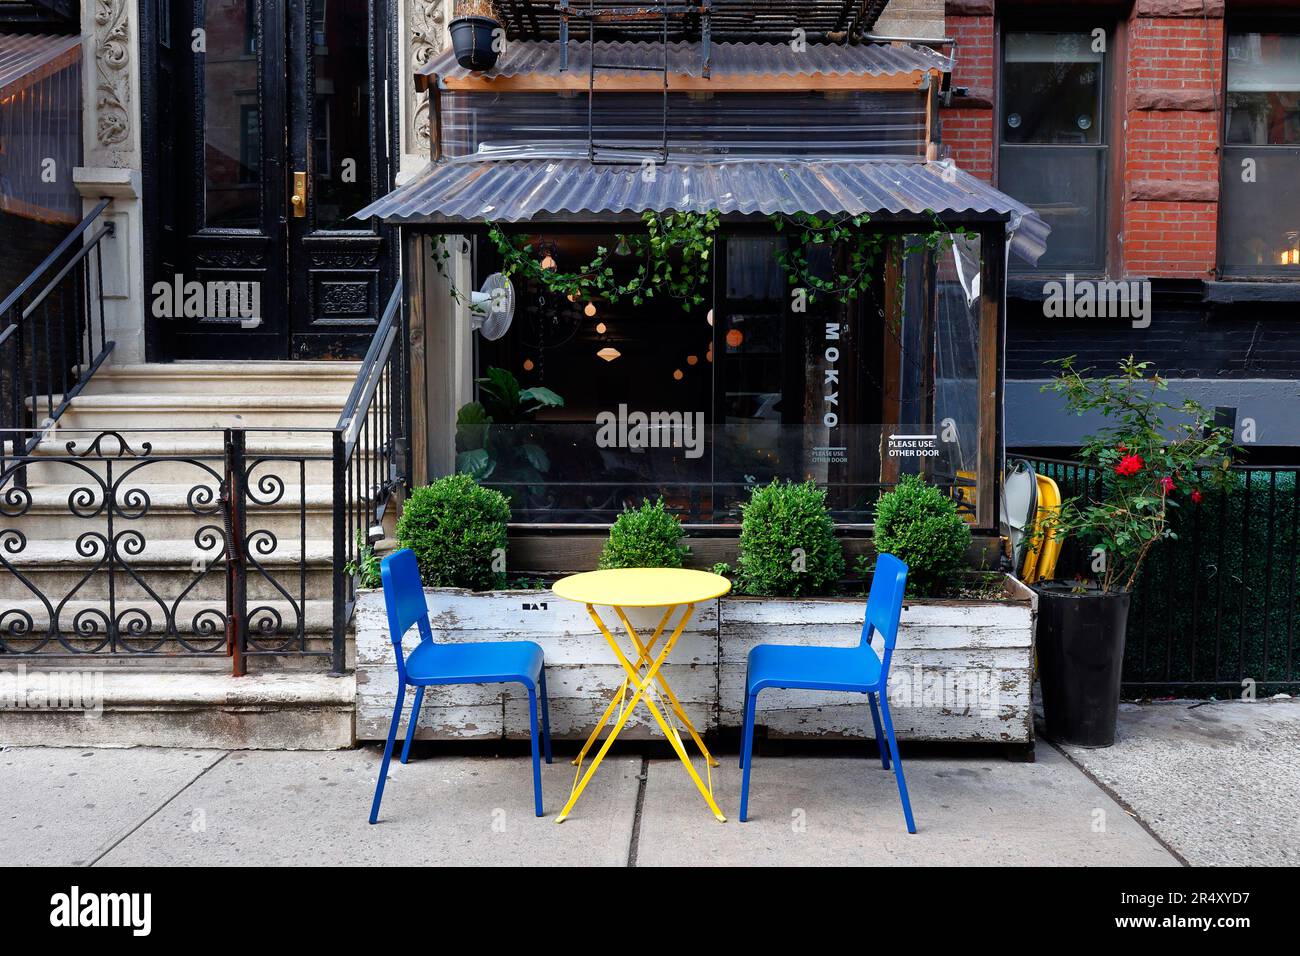 Mokyo 목요, 109 St Marks PL, New York, New York, New York photo d'un restaurant de petites assiettes aux saveurs coréennes dans l'East Village de Manhattan. Banque D'Images